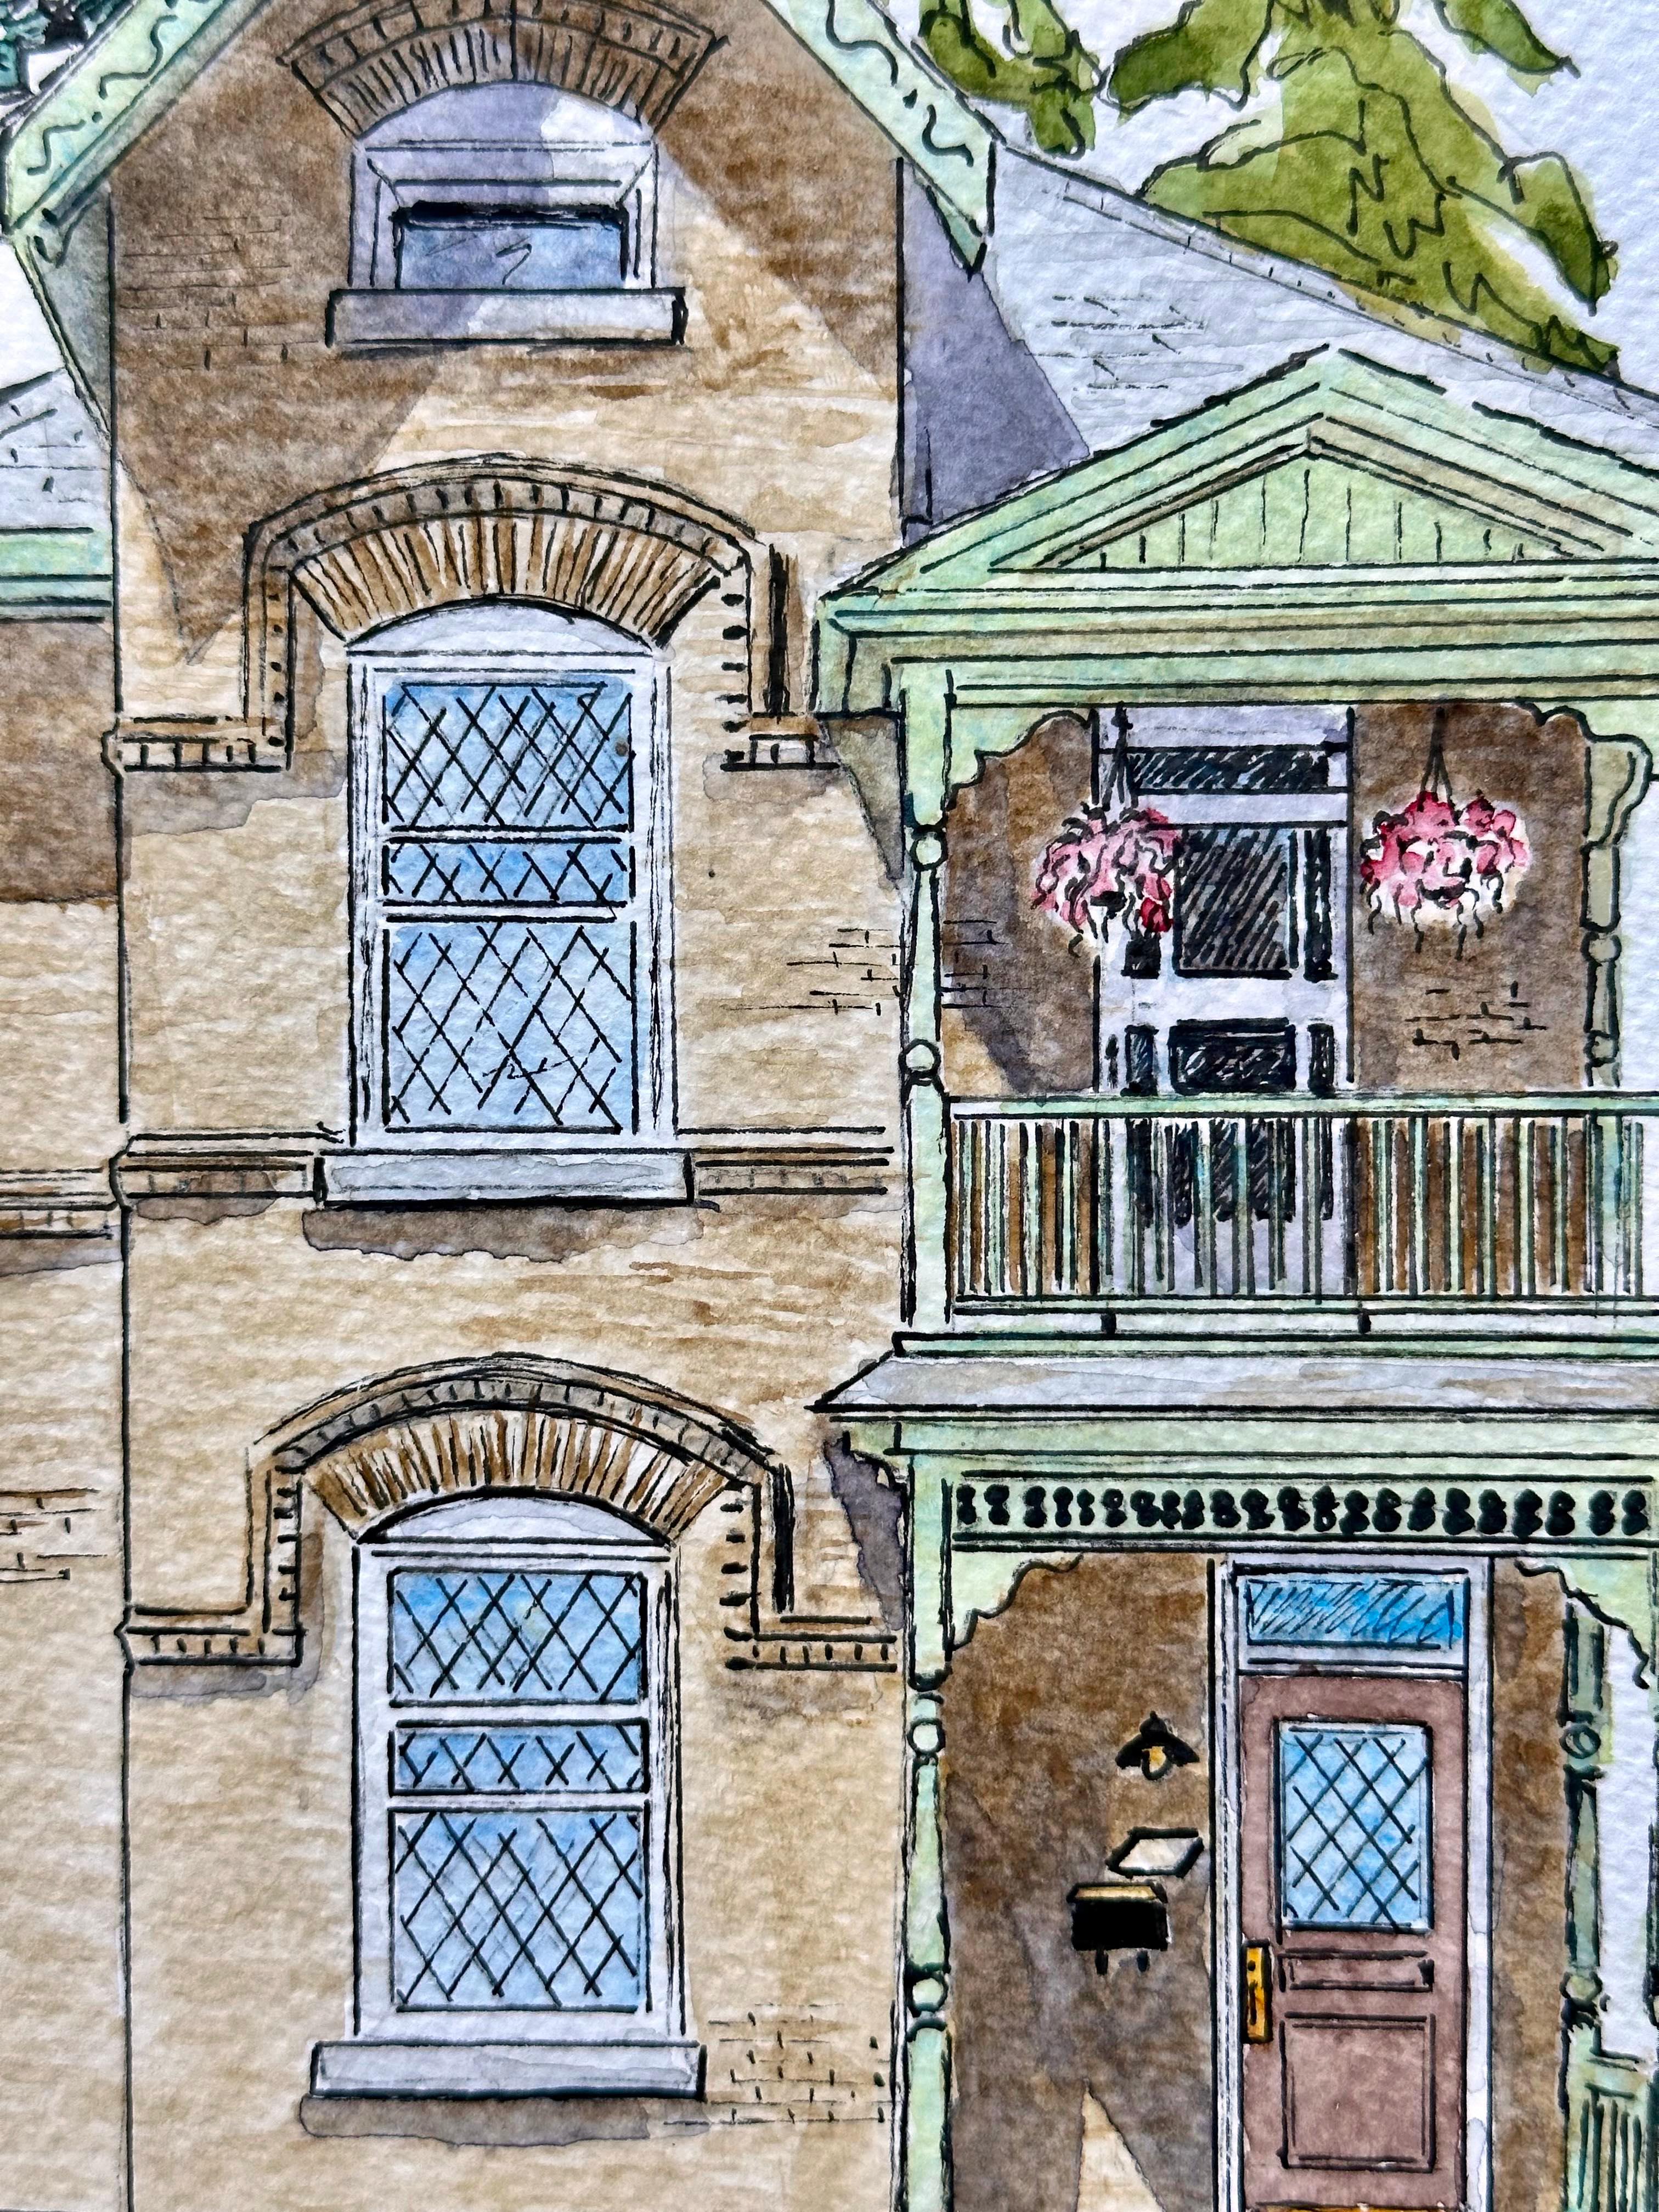 <p>Kommentare des Künstlers<br>Der Künstler Maurice Dionne zeigt einen faszinierenden Blick auf ein raffiniertes viktorianisches Haus, das er bei einem Spaziergang durch die Stadt sah. Teil seiner Random-House-Serie, in der er die verschiedenen